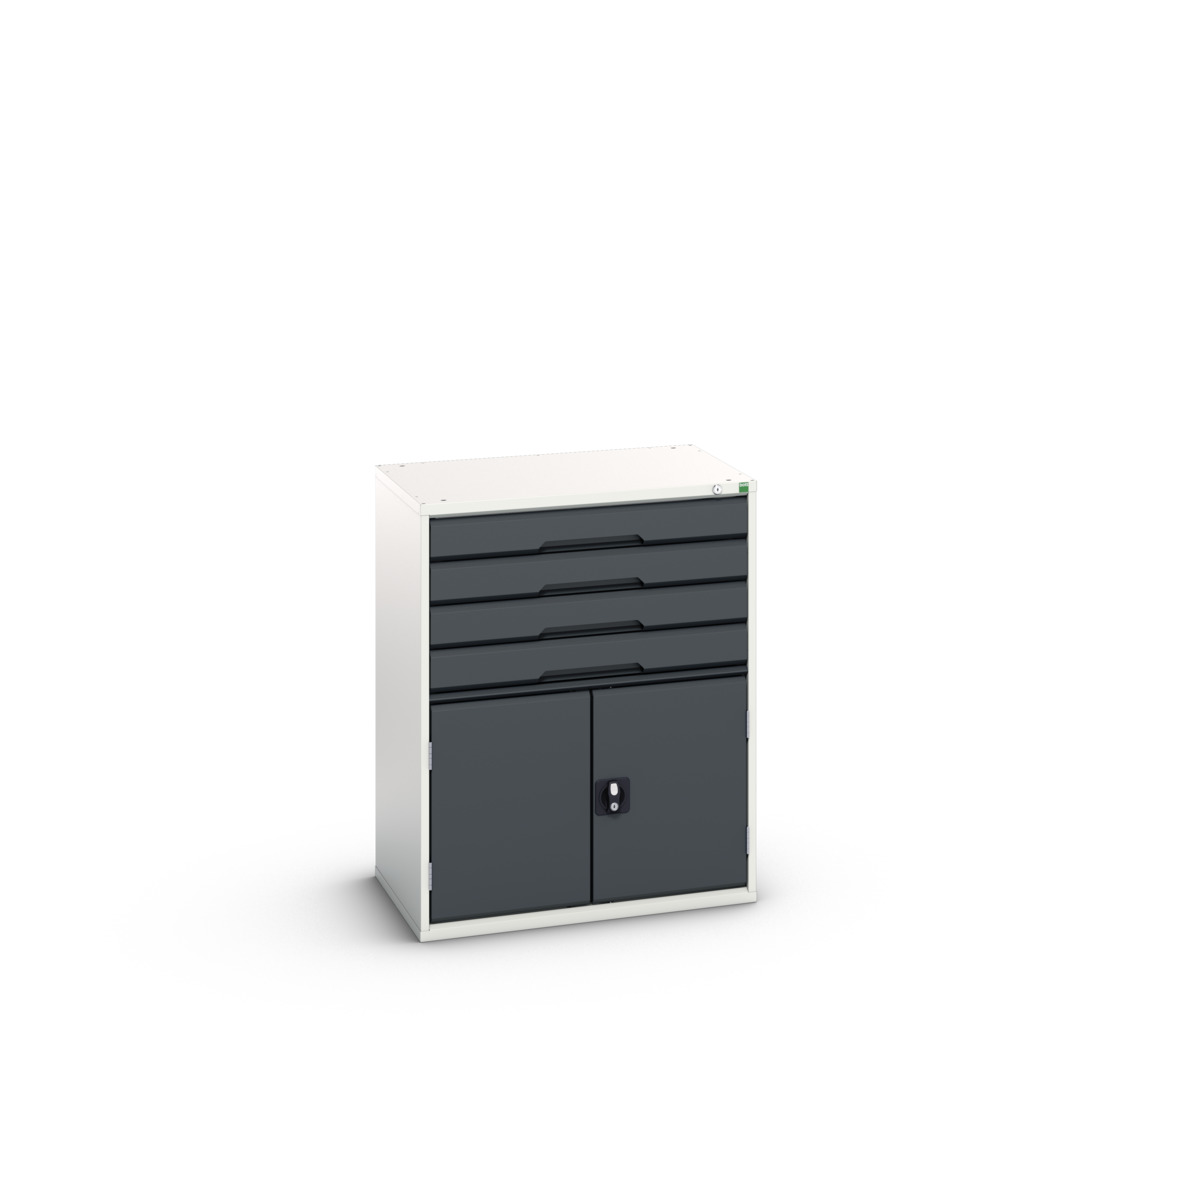 16925465.19 - verso drawer-door cabinet